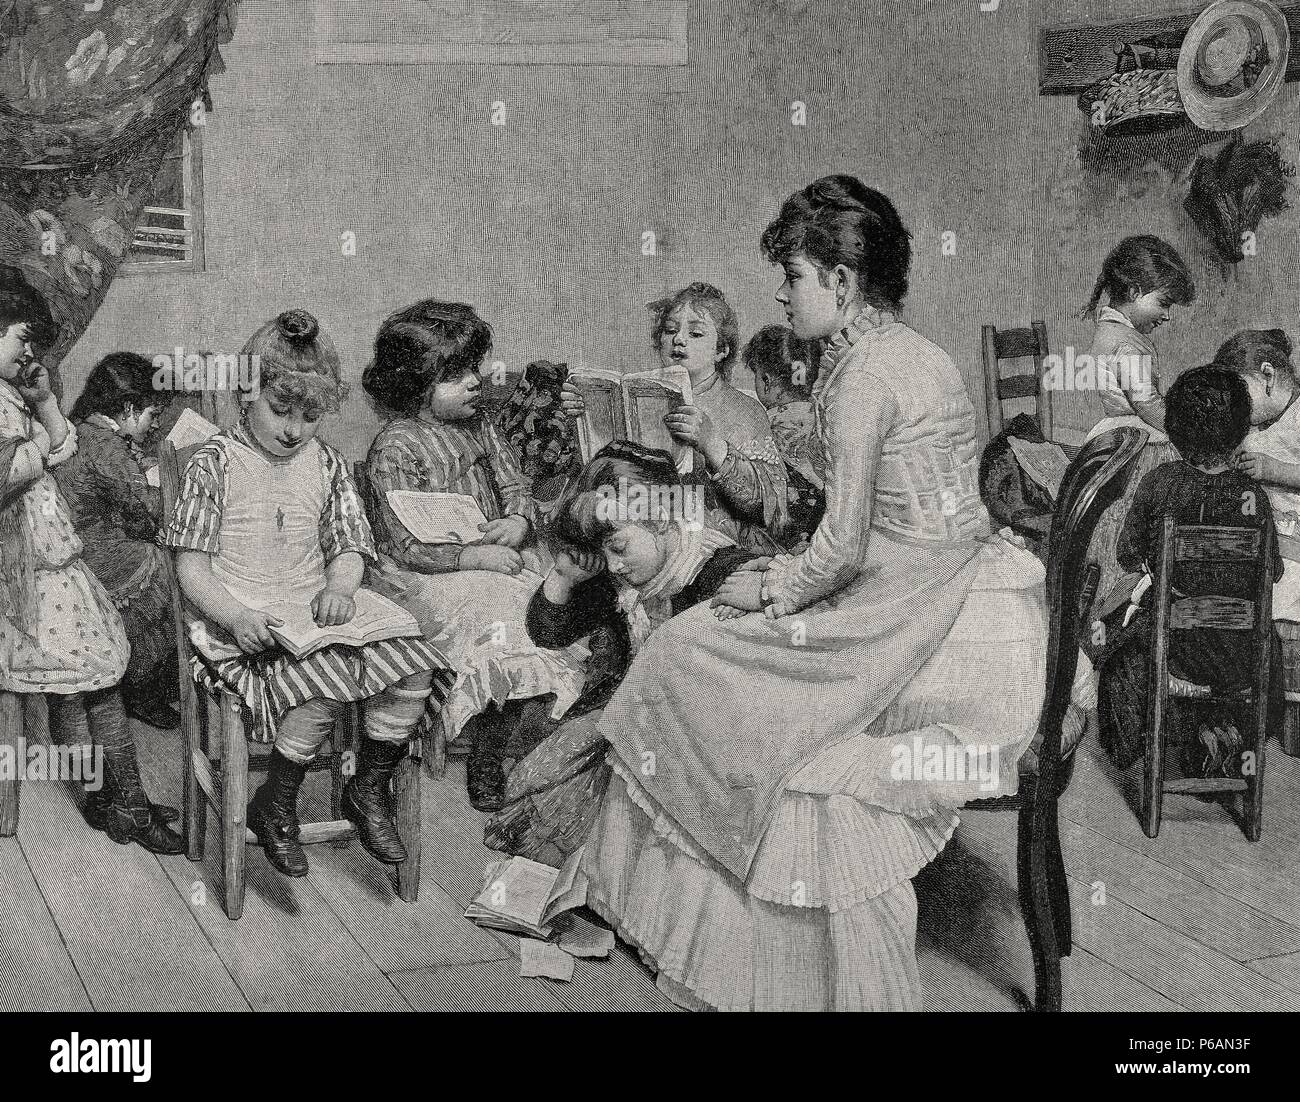 Girls' school. Engraving, 19th century. 'La Ilustracion Espanola y Americana'. Stock Photo